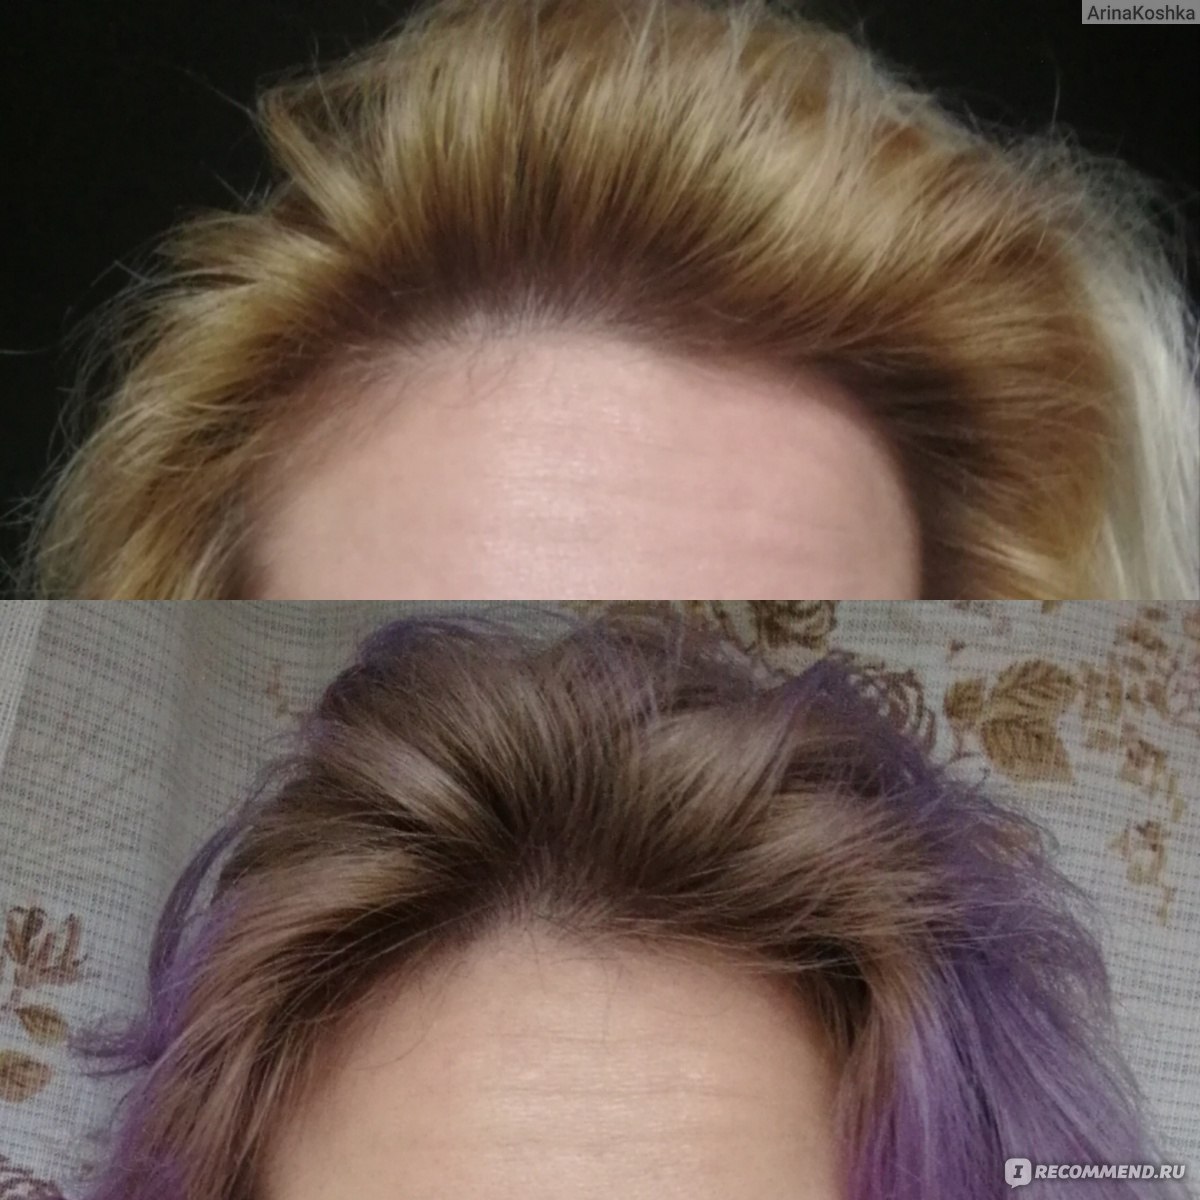 Оттеночный шампунь для волос фото до и после блонд